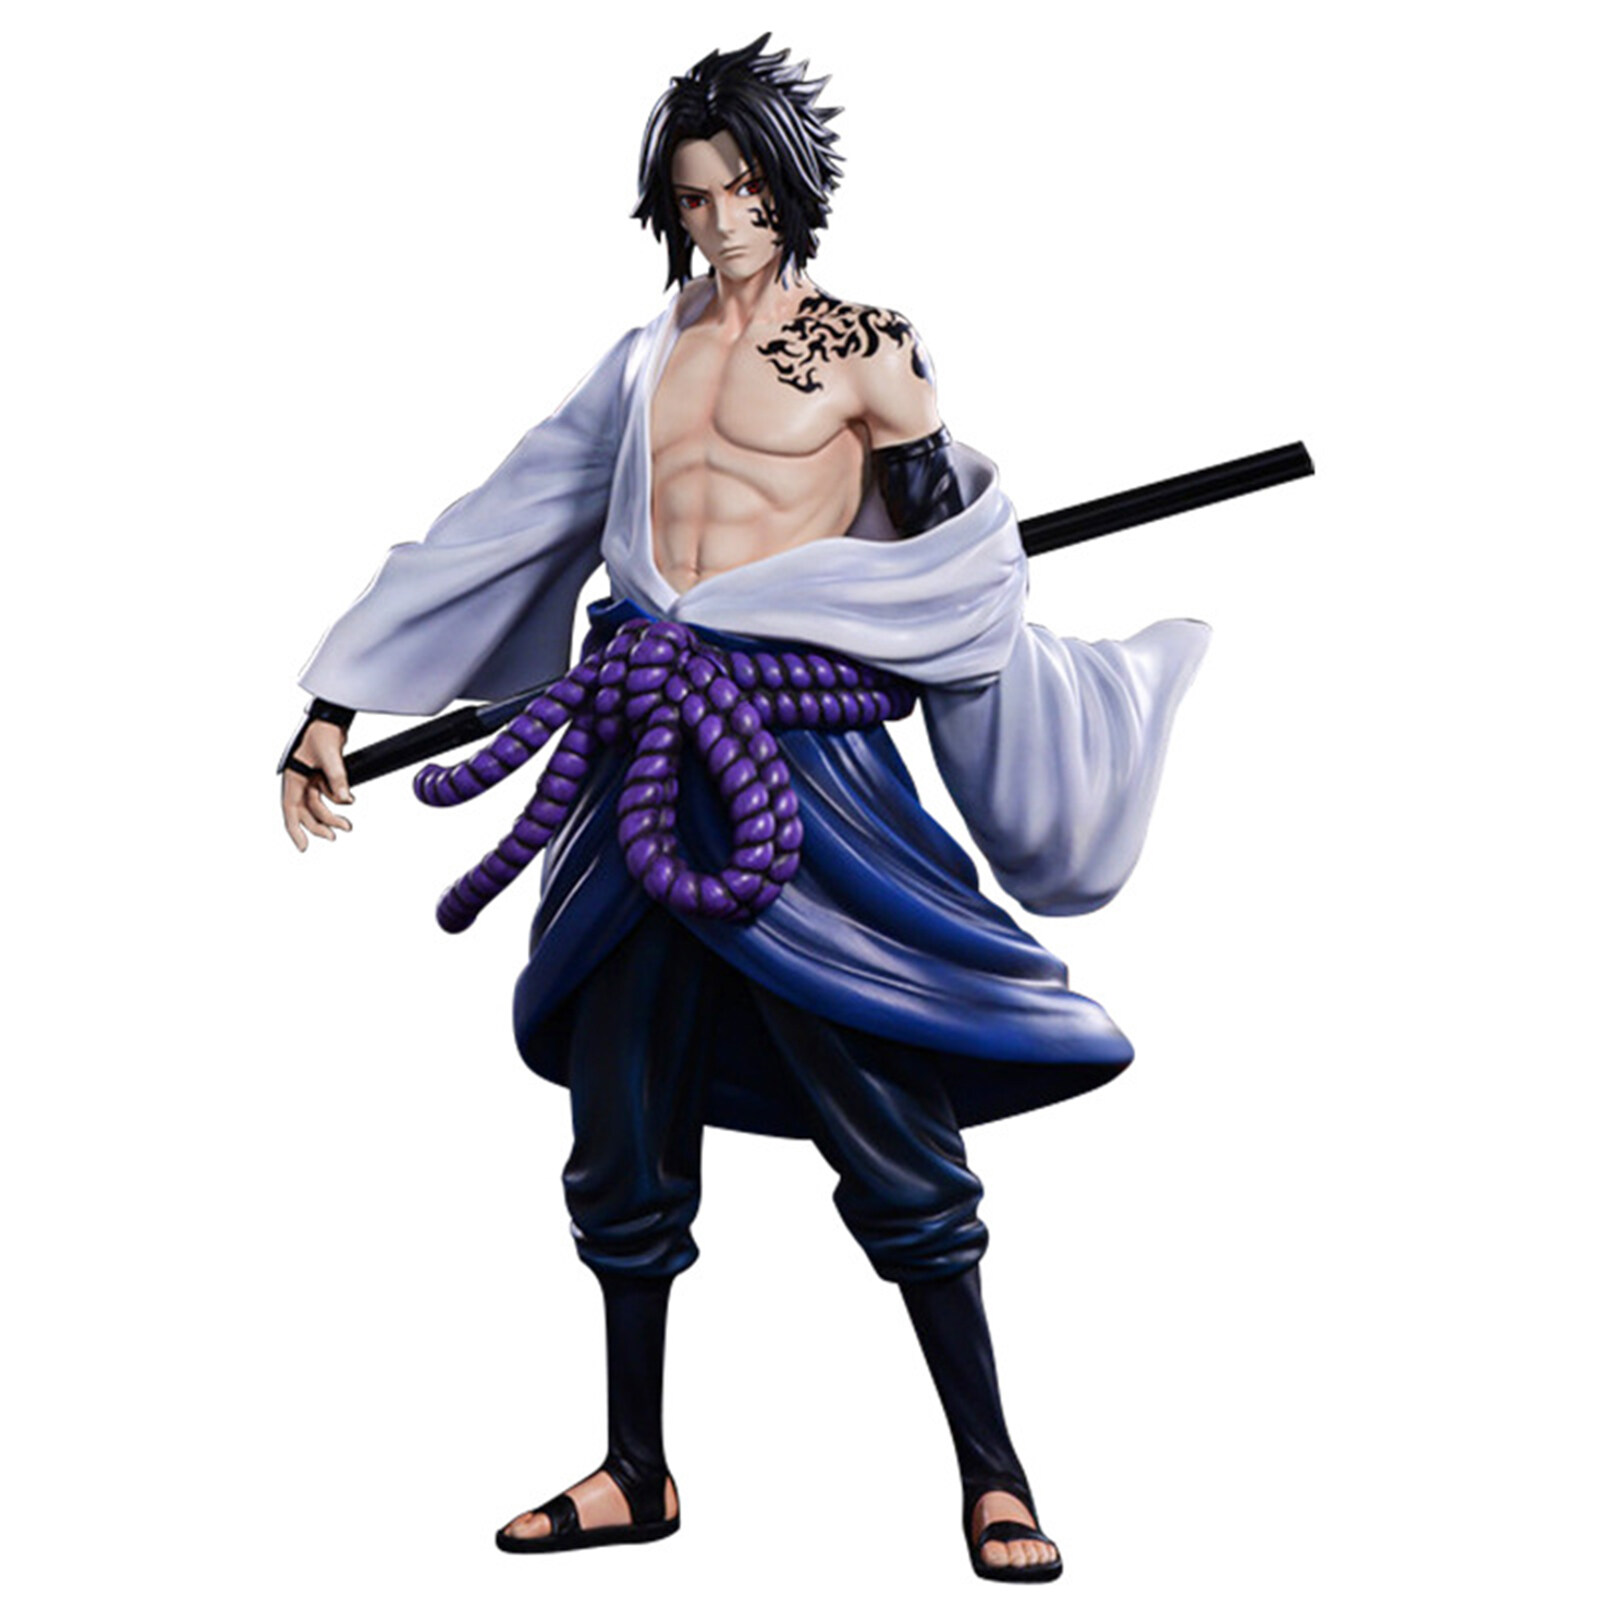 Mô hình nhân vật Sasuke: Bạn có yêu thích những bộ anime đầy phép thuật và hành động không? Hãy đến và khám phá mô hình nhân vật Sasuke - một trong những nhân vật phổ biến nhất trong thế giới anime. Với đầy đủ kỹ năng và phong thái của mình, Sasuke sẽ như là người quen thuộc với bạn chỉ sau vài giây. Hãy xem hình ảnh liên quan để tham gia vào một cuộc phiêu lưu đáng nhớ với Sasuke.